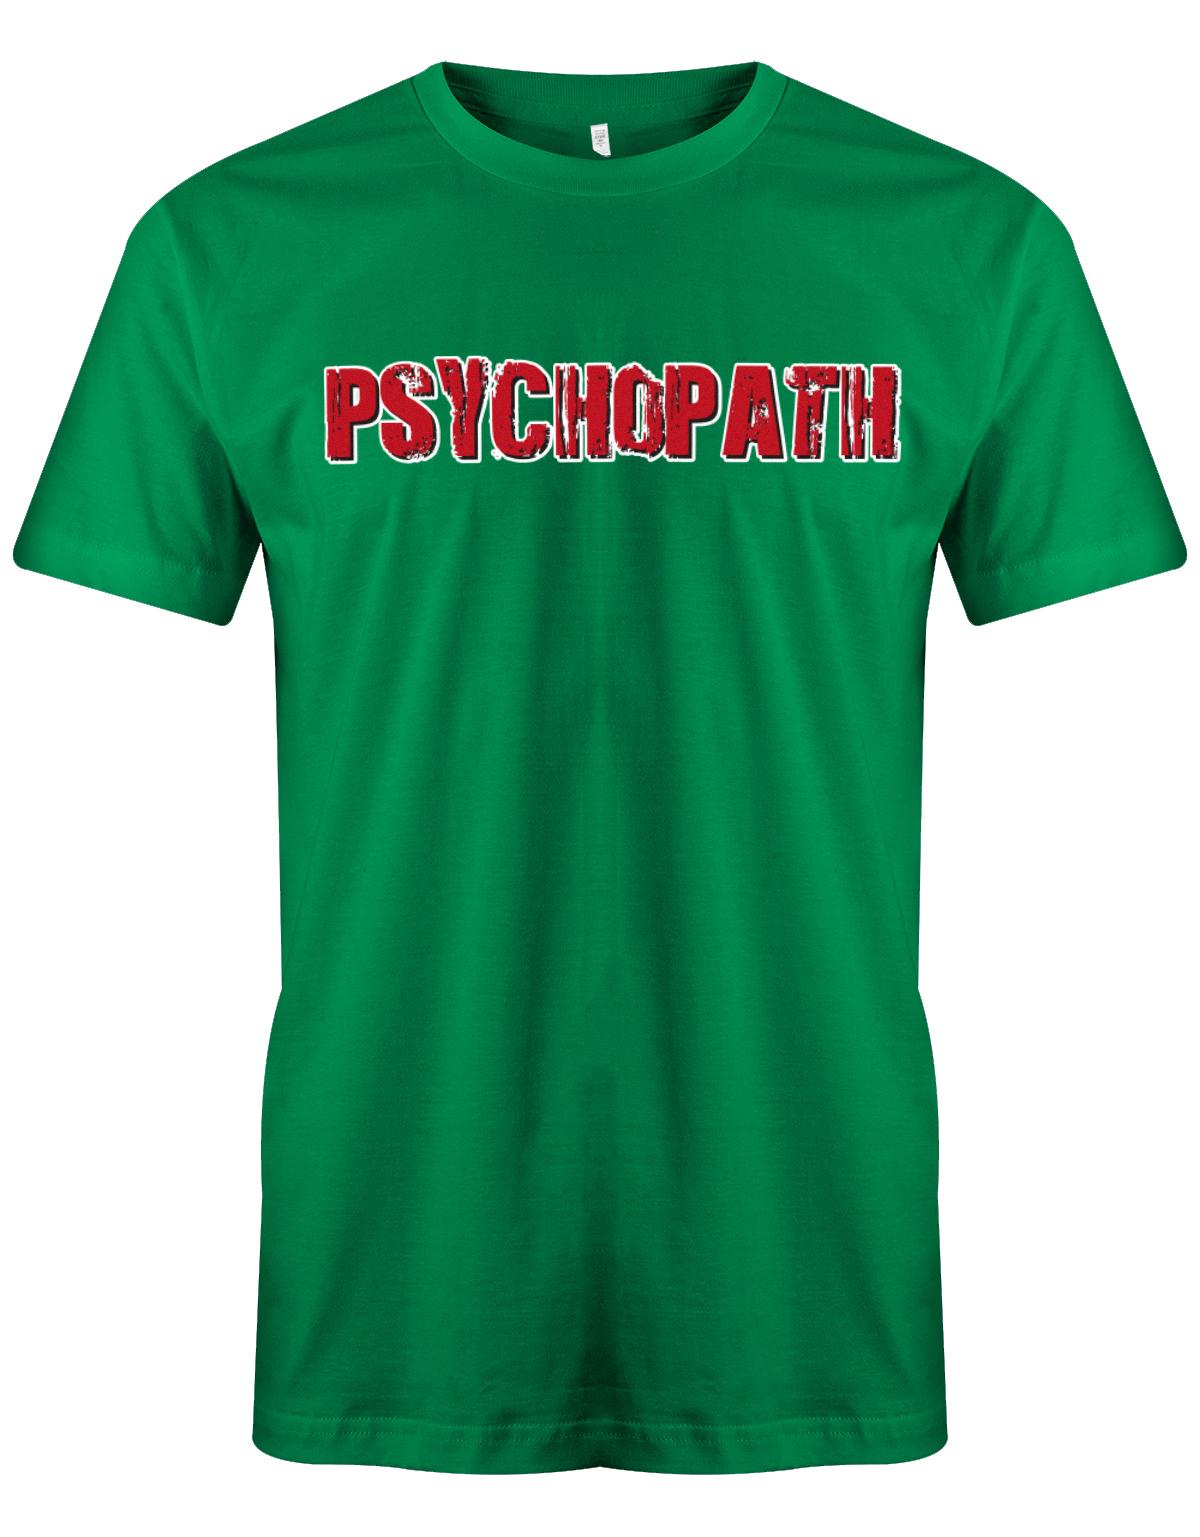 Psychopath-Kost-m-Shirt-Herren-Gr-n